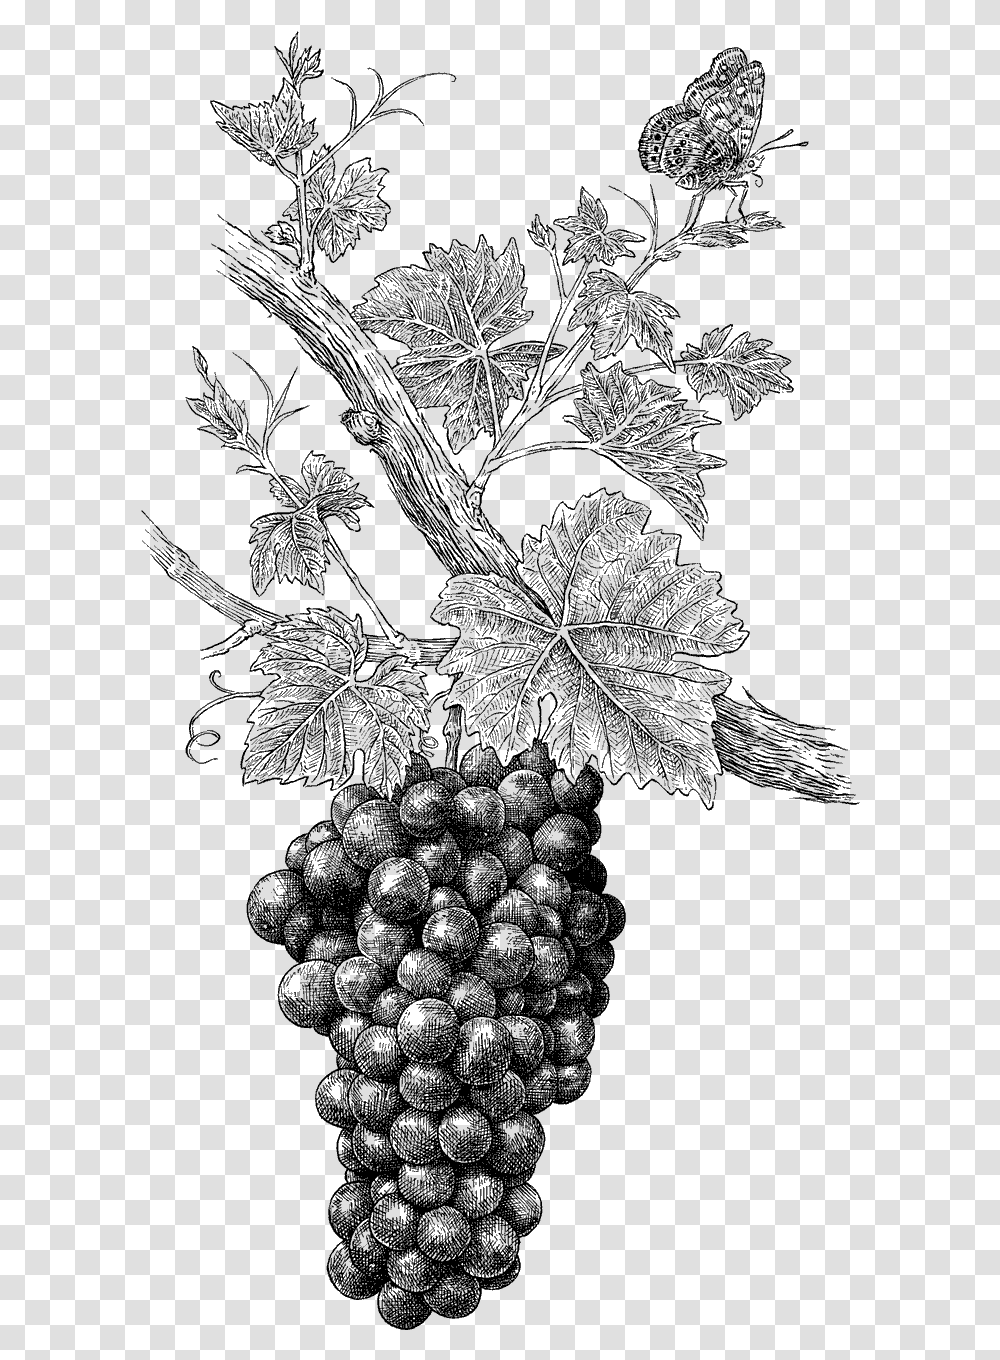 Wine Grapes Grape Illustration, Leaf, Plant, Tree, Maple Leaf Transparent Png